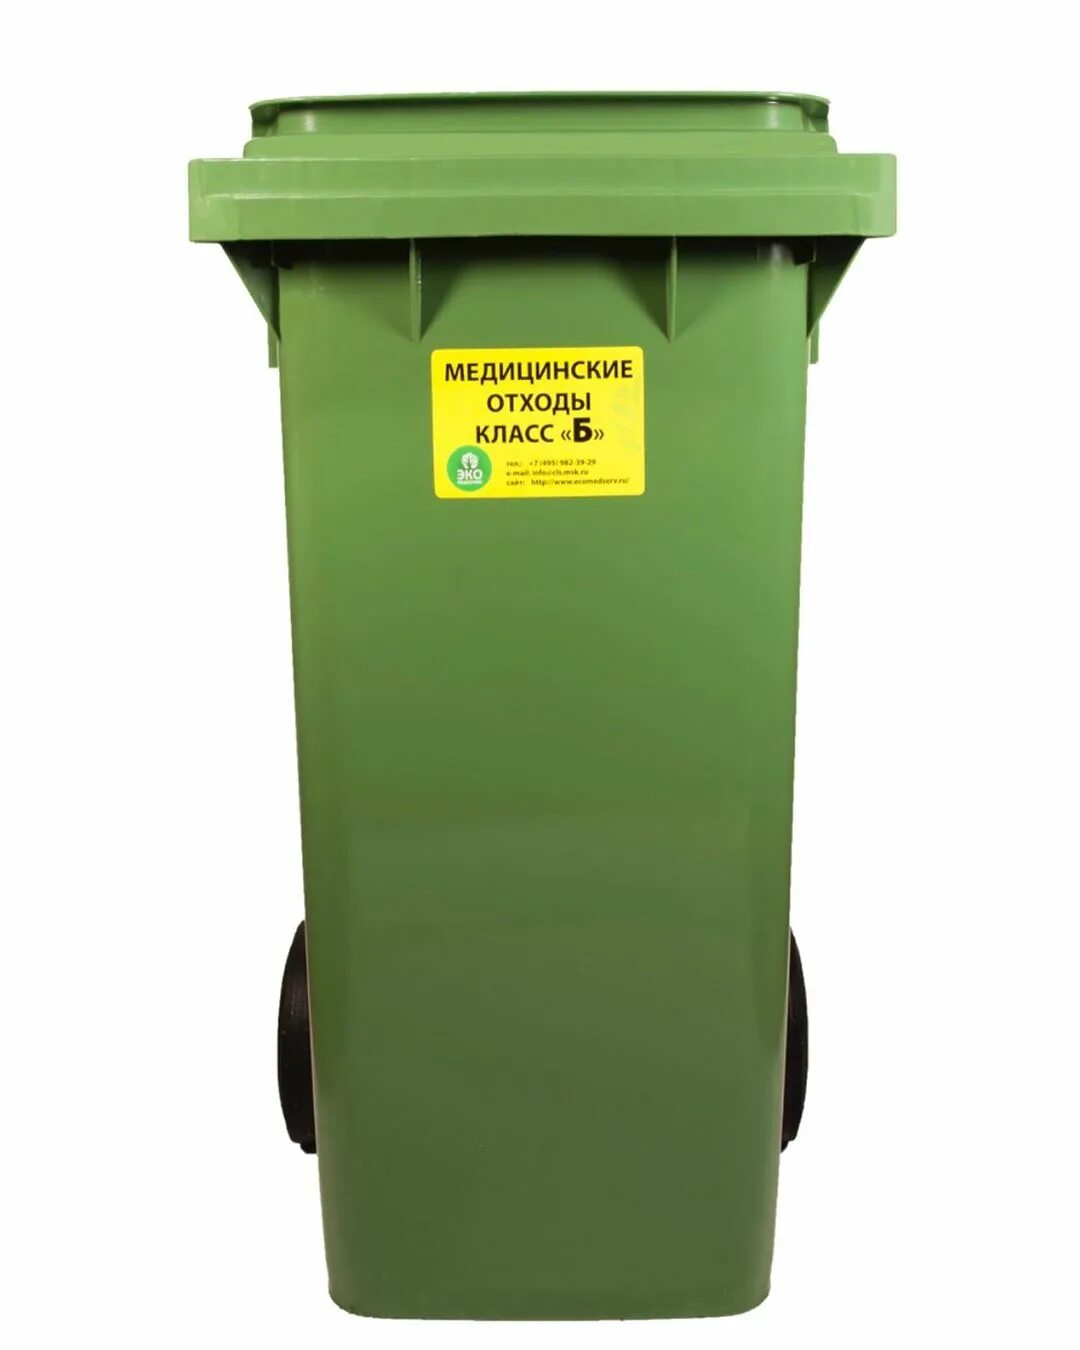 Емкость для сбора бытовых отходов. Бак для отходов ЦР15.189.00.000. Контейнеры для медицинских отходов.